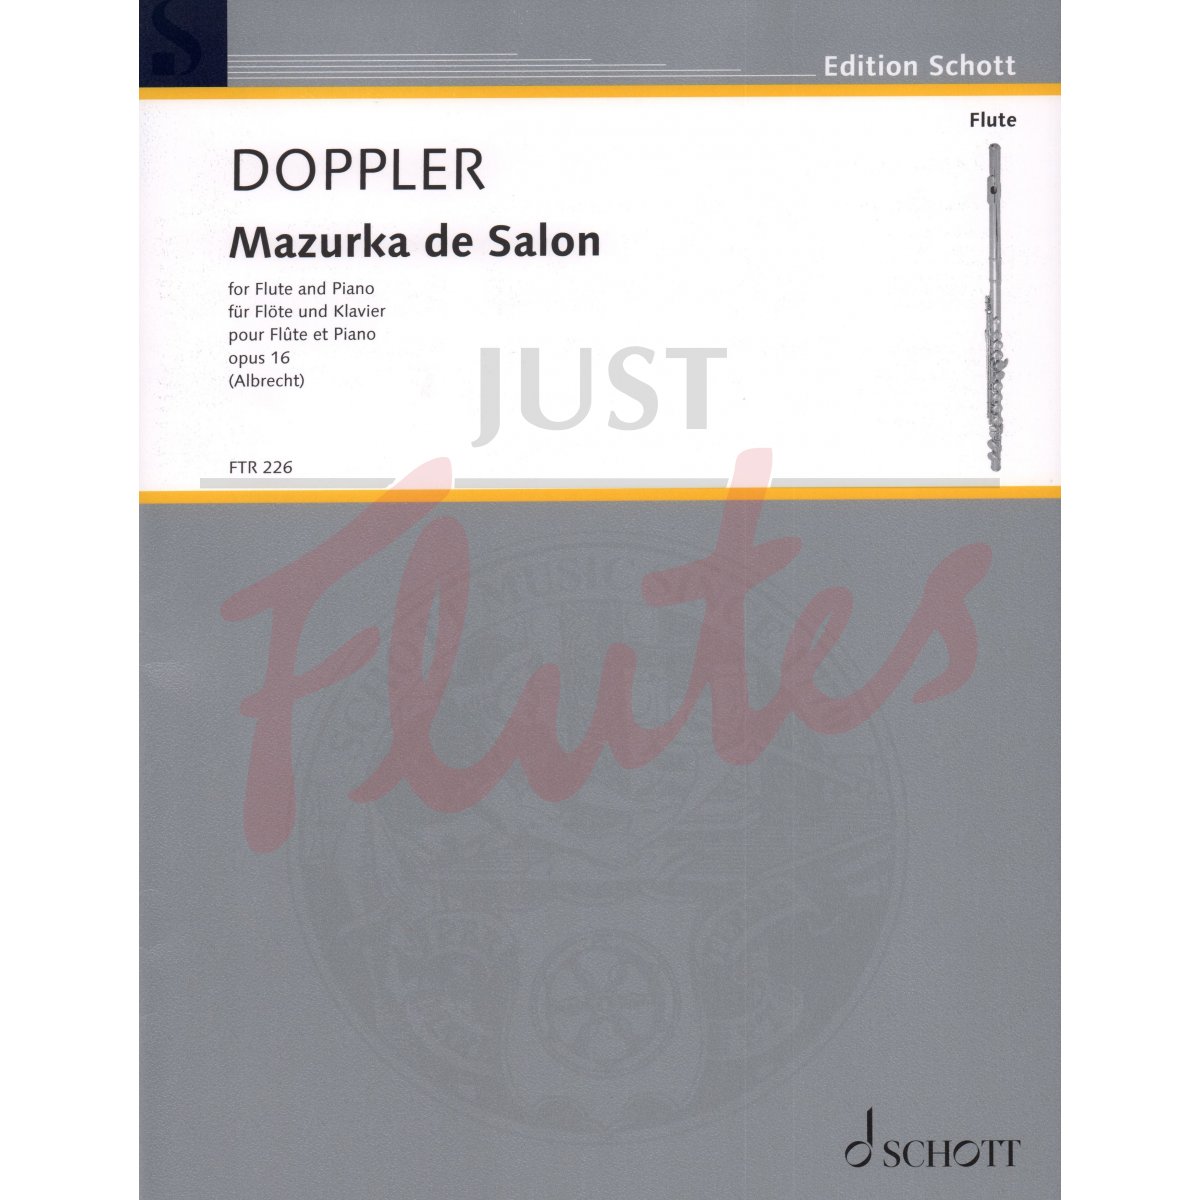 Mazurka de Salon for Flute and Piano